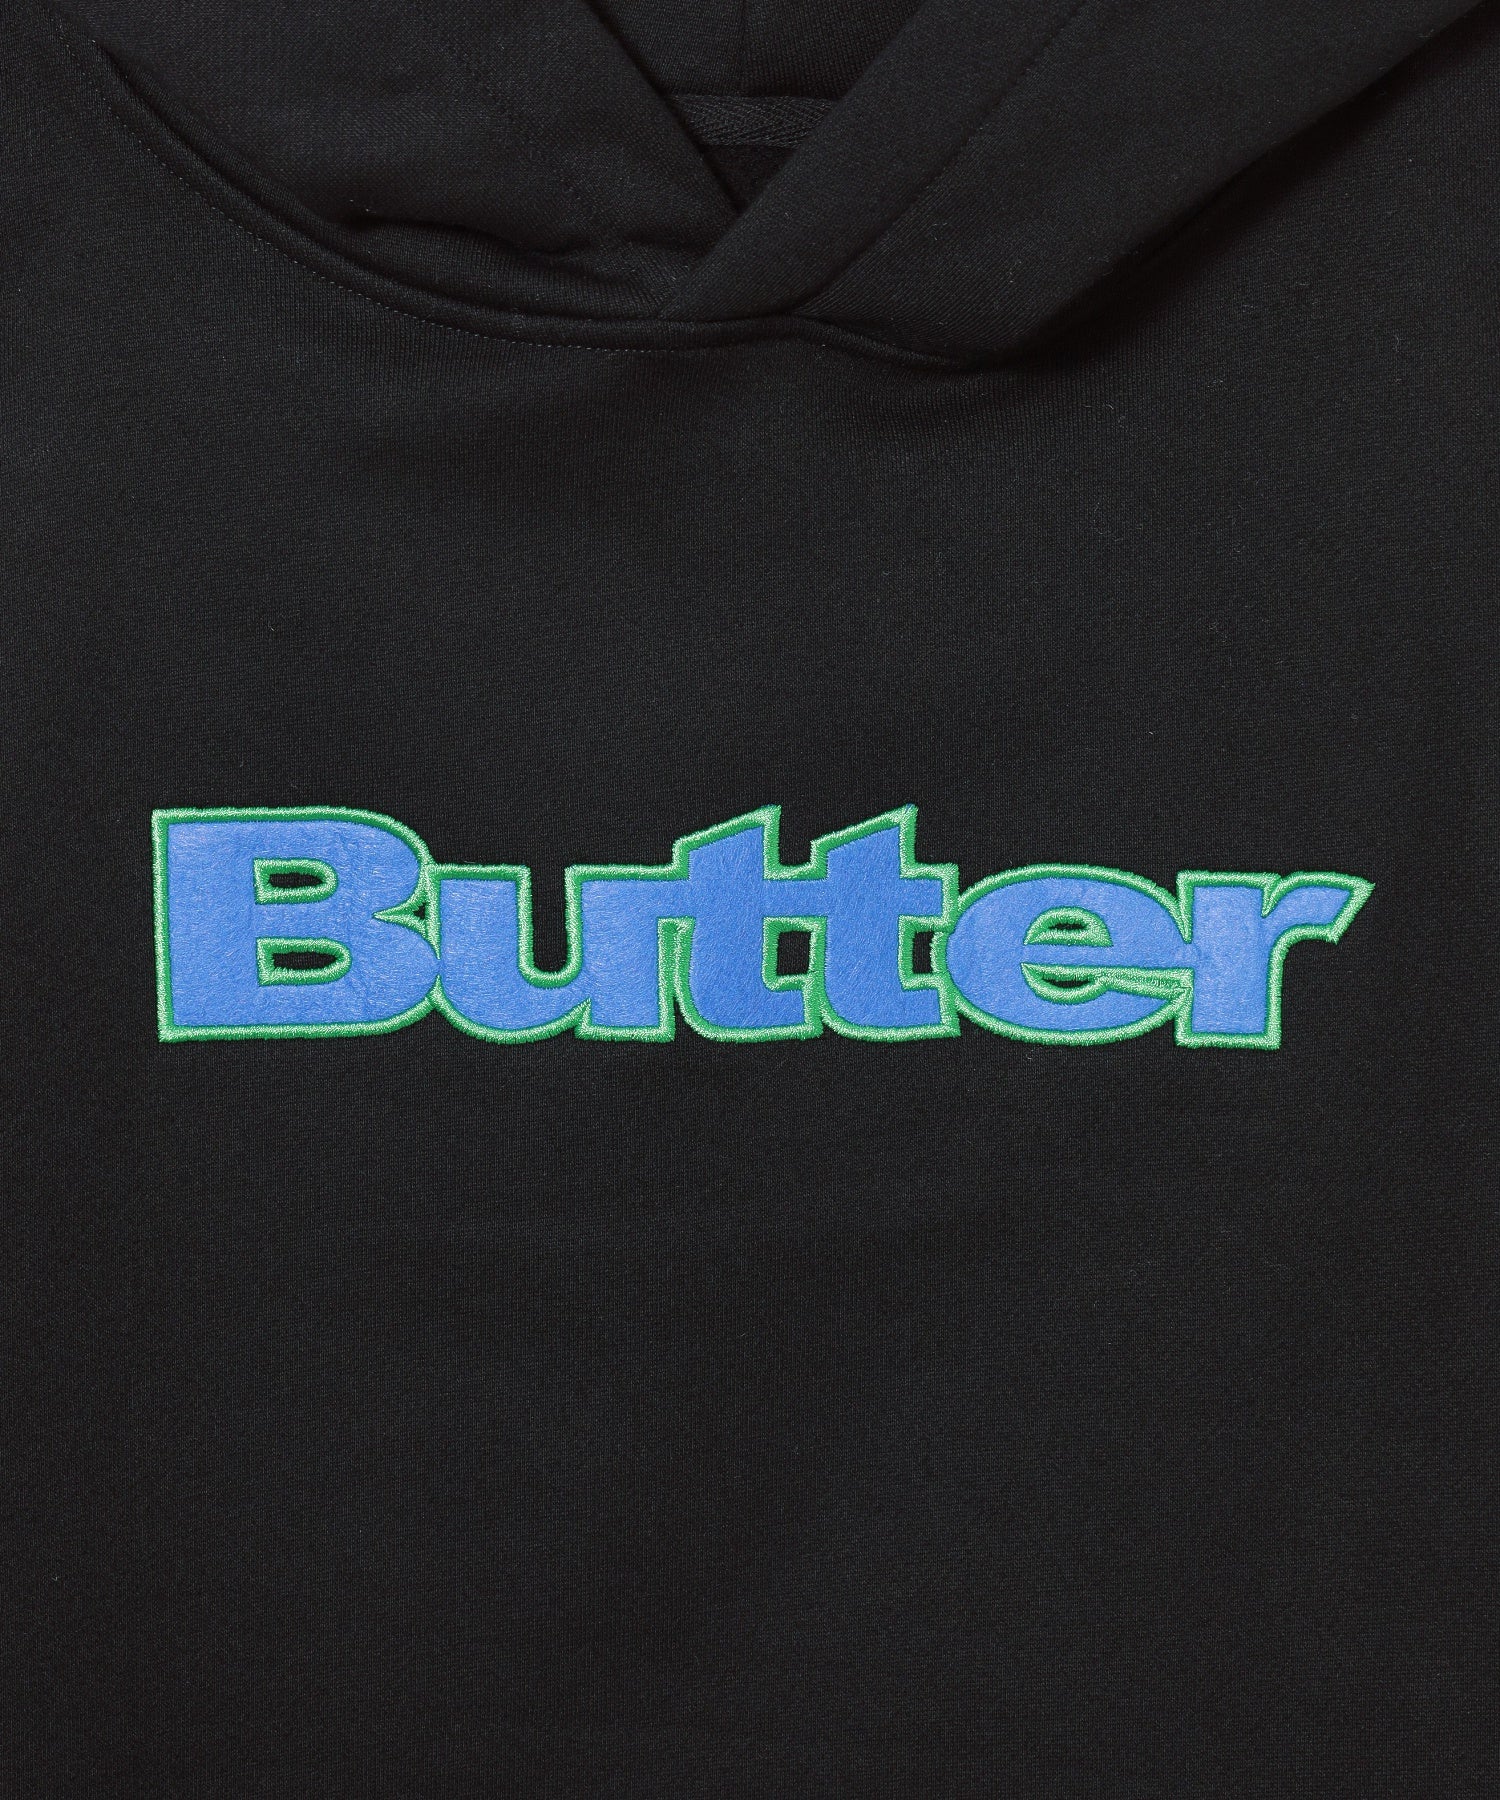 BUTTER/バター/Felt Logo Applique Pullover Hood